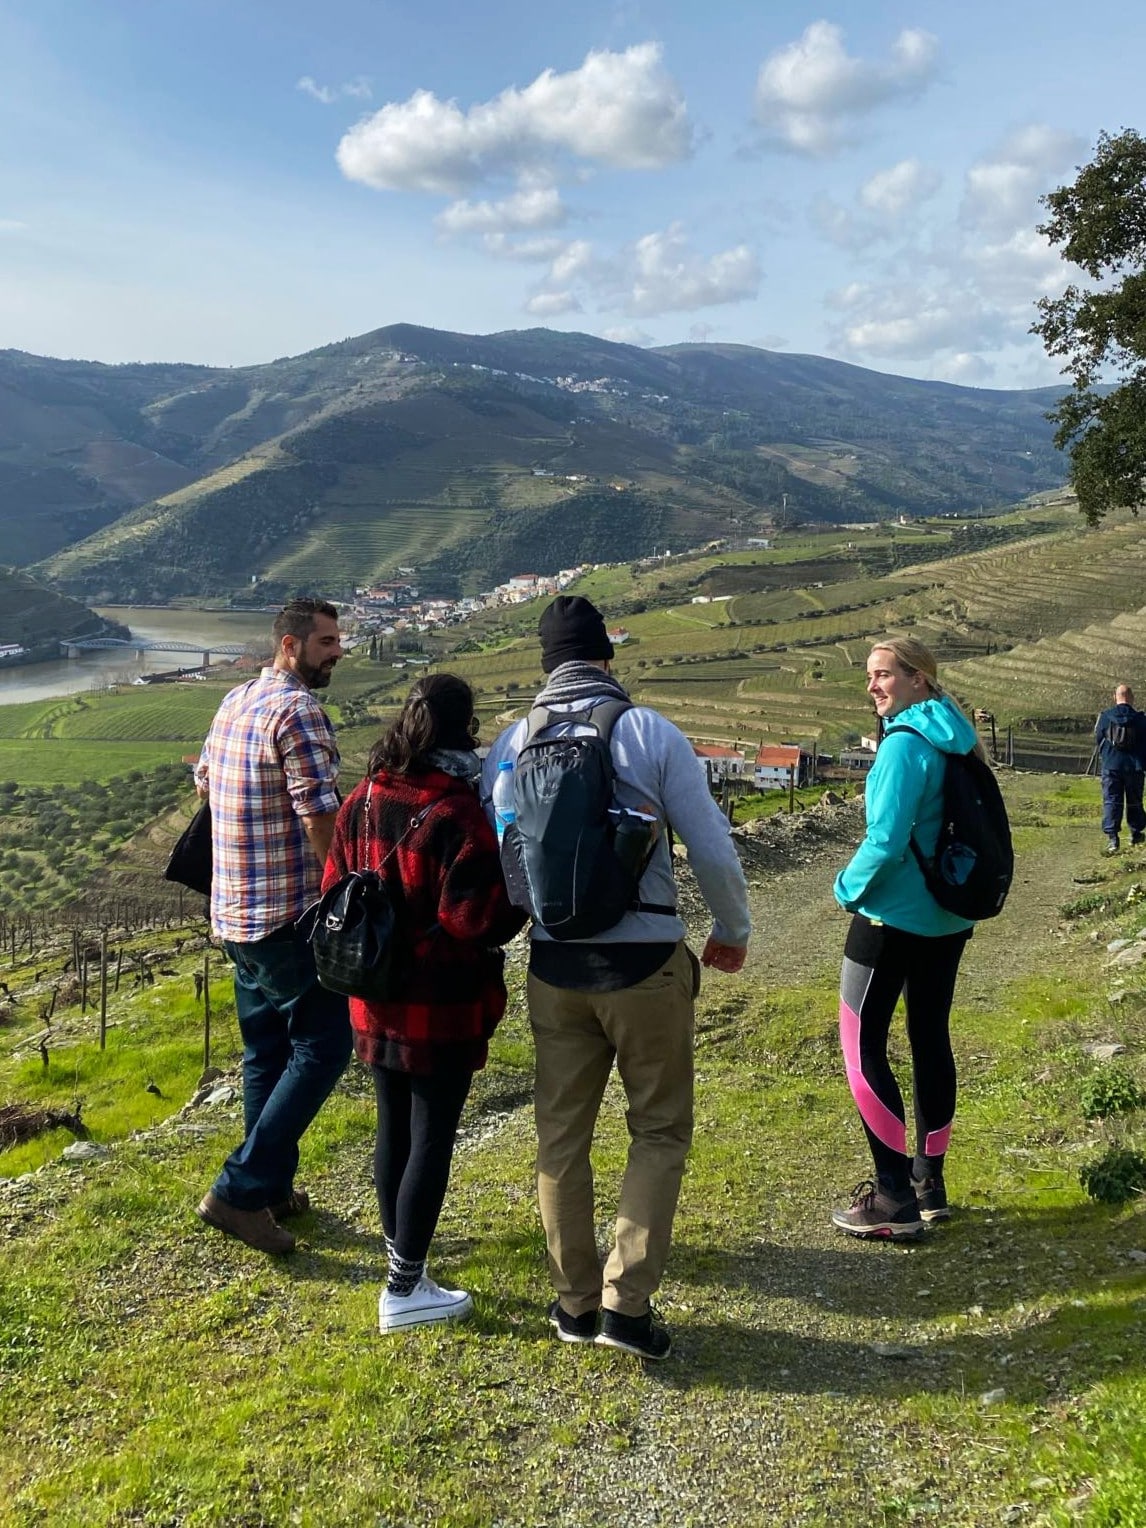 Las mejores actividades de Oporto | Visitas y experiencias únicas -  Distrito de Oporto, Portugal | Airbnb